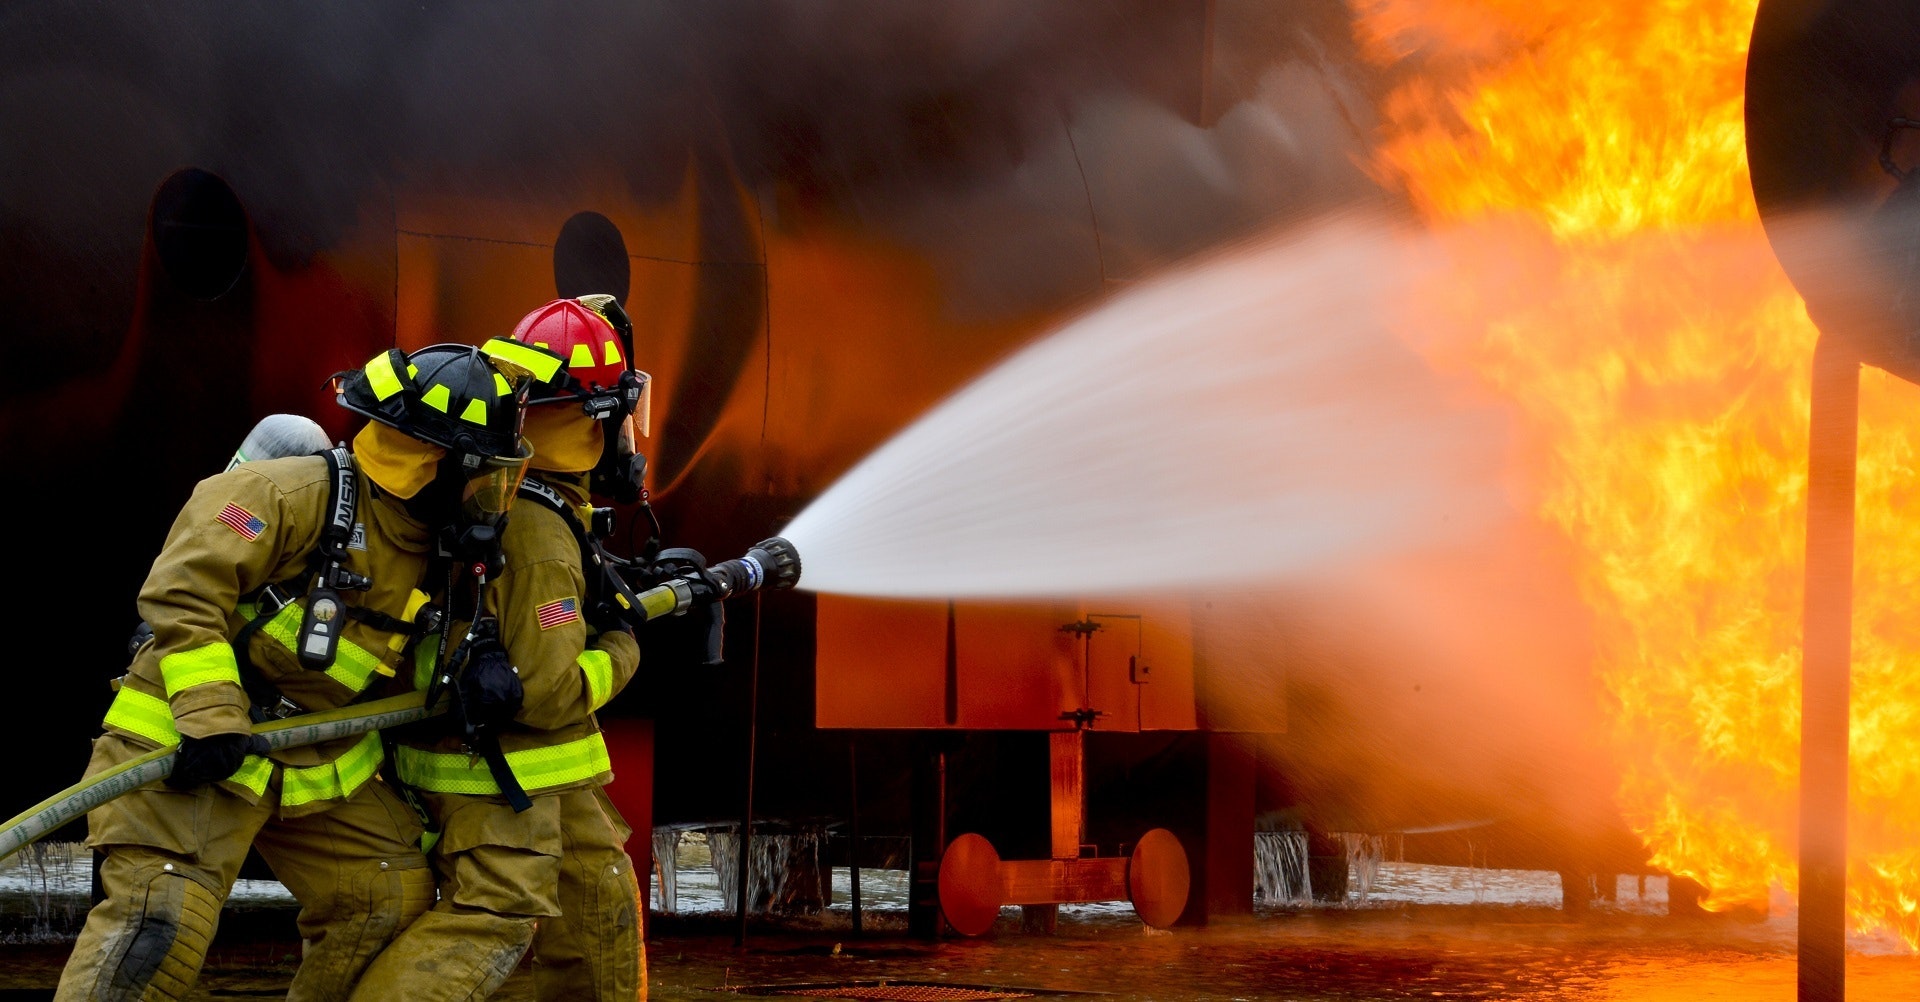 12 วิธีปรับแต่งบ้านและอาคารเพื่อลดอันตรายจากปัญหาไฟไหม้